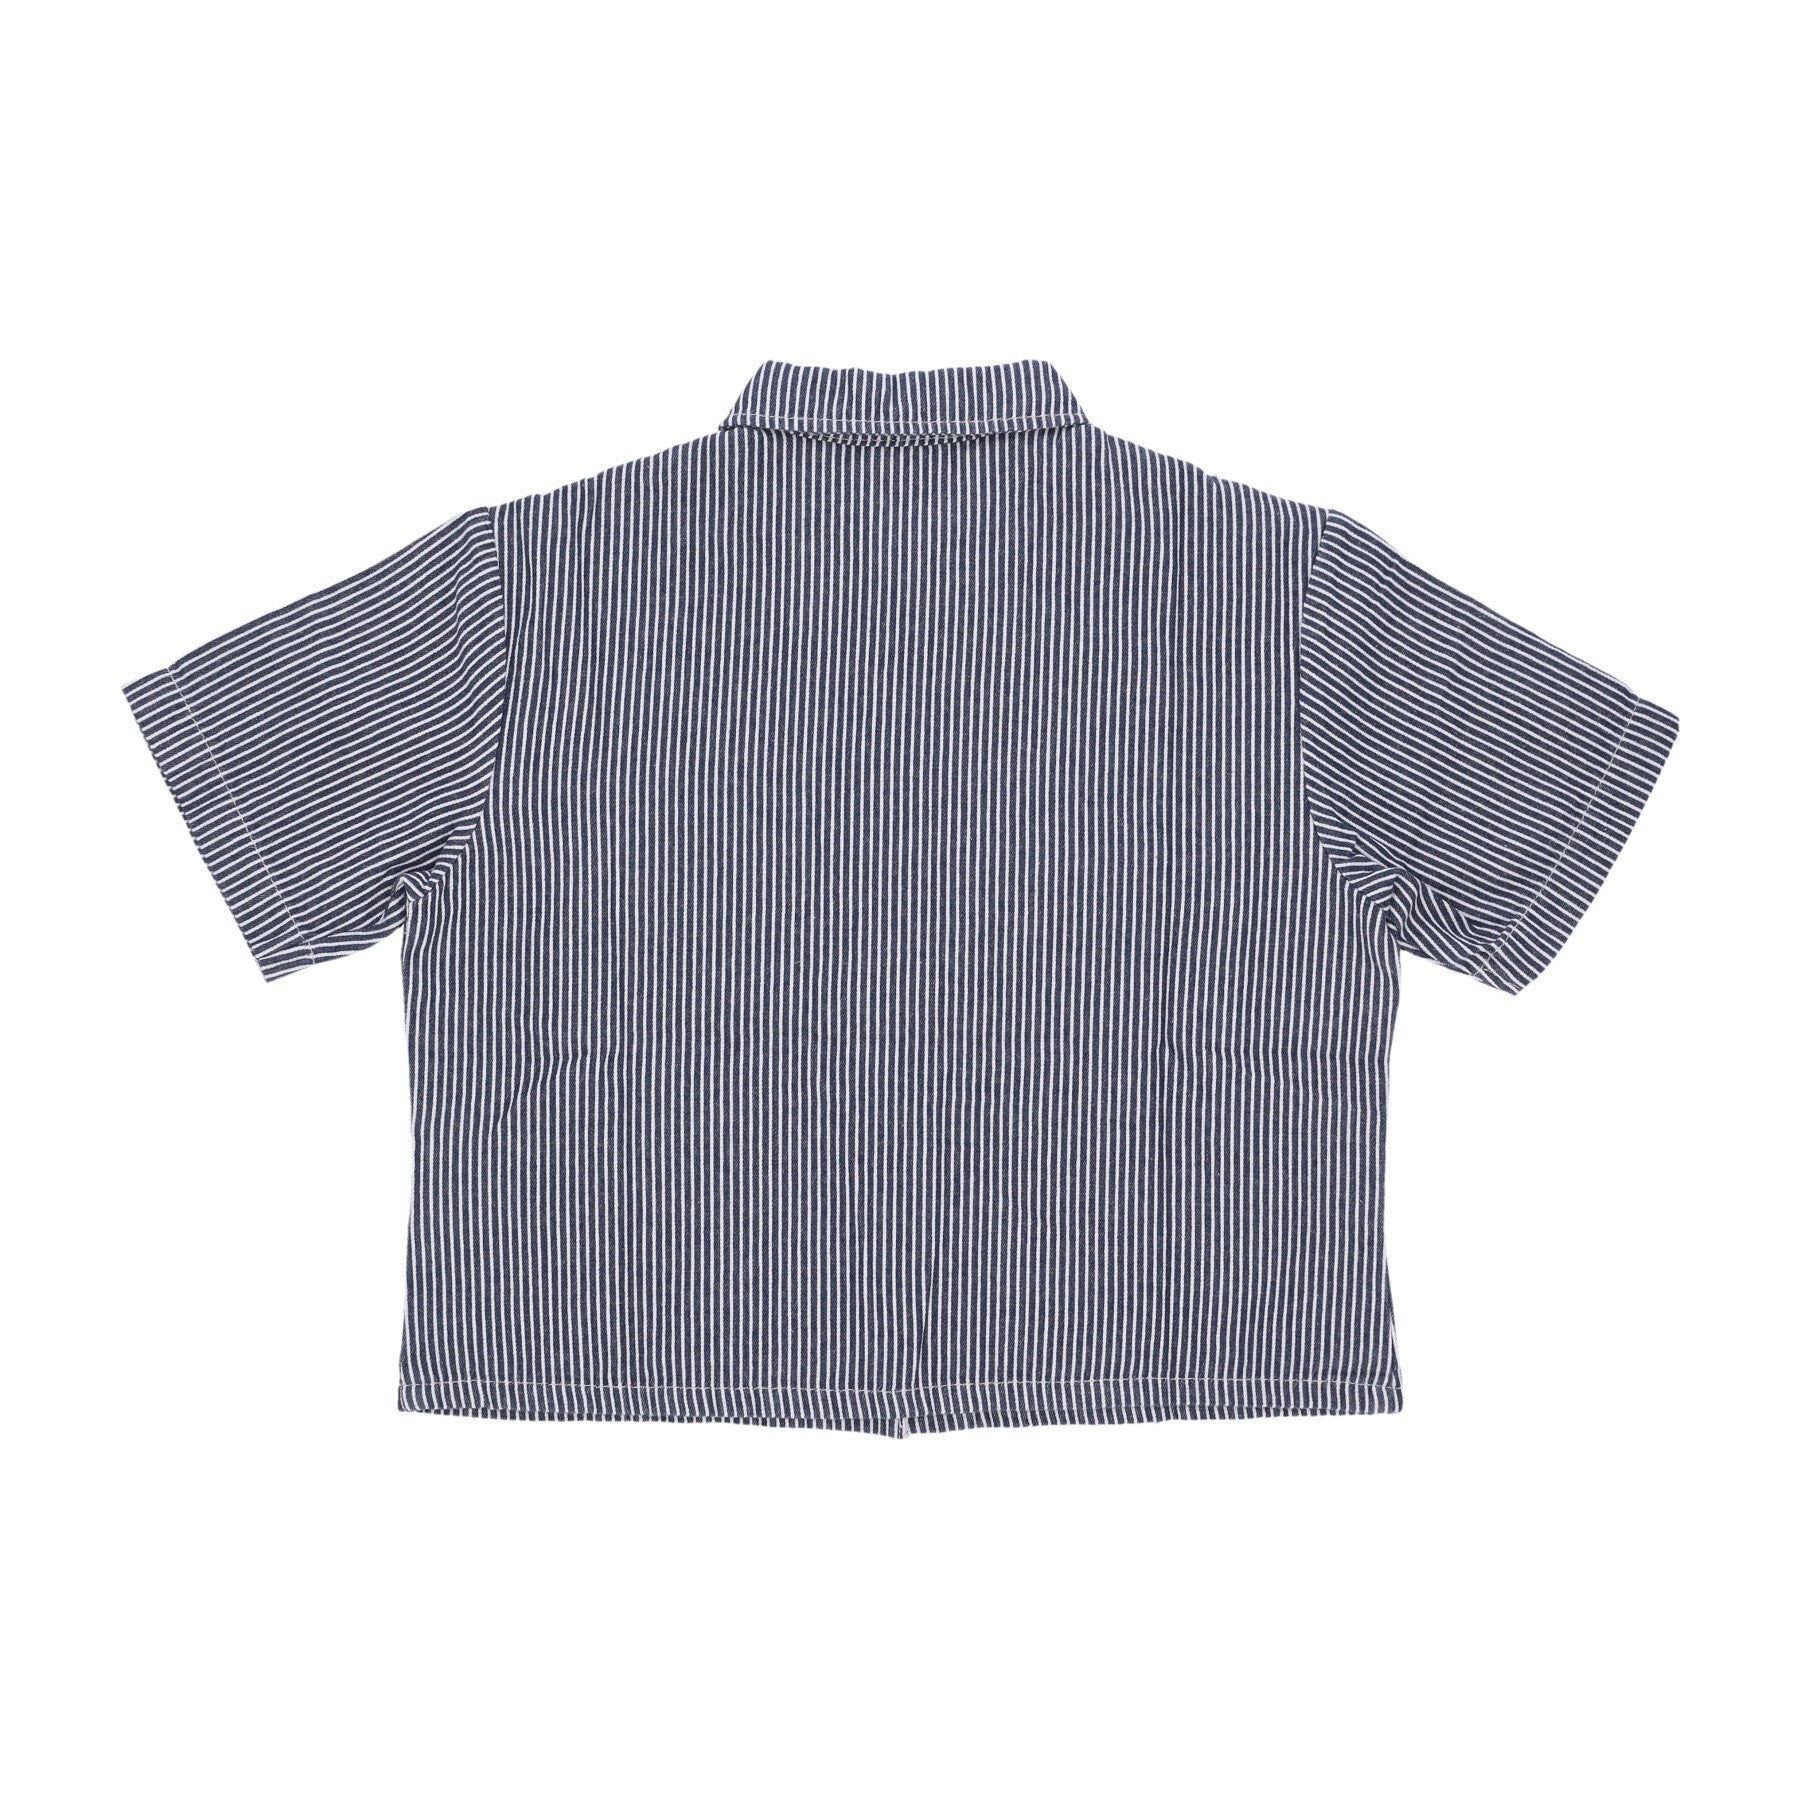 Short Sleeve Women's Shirt Hickory Shirt Blue Striped